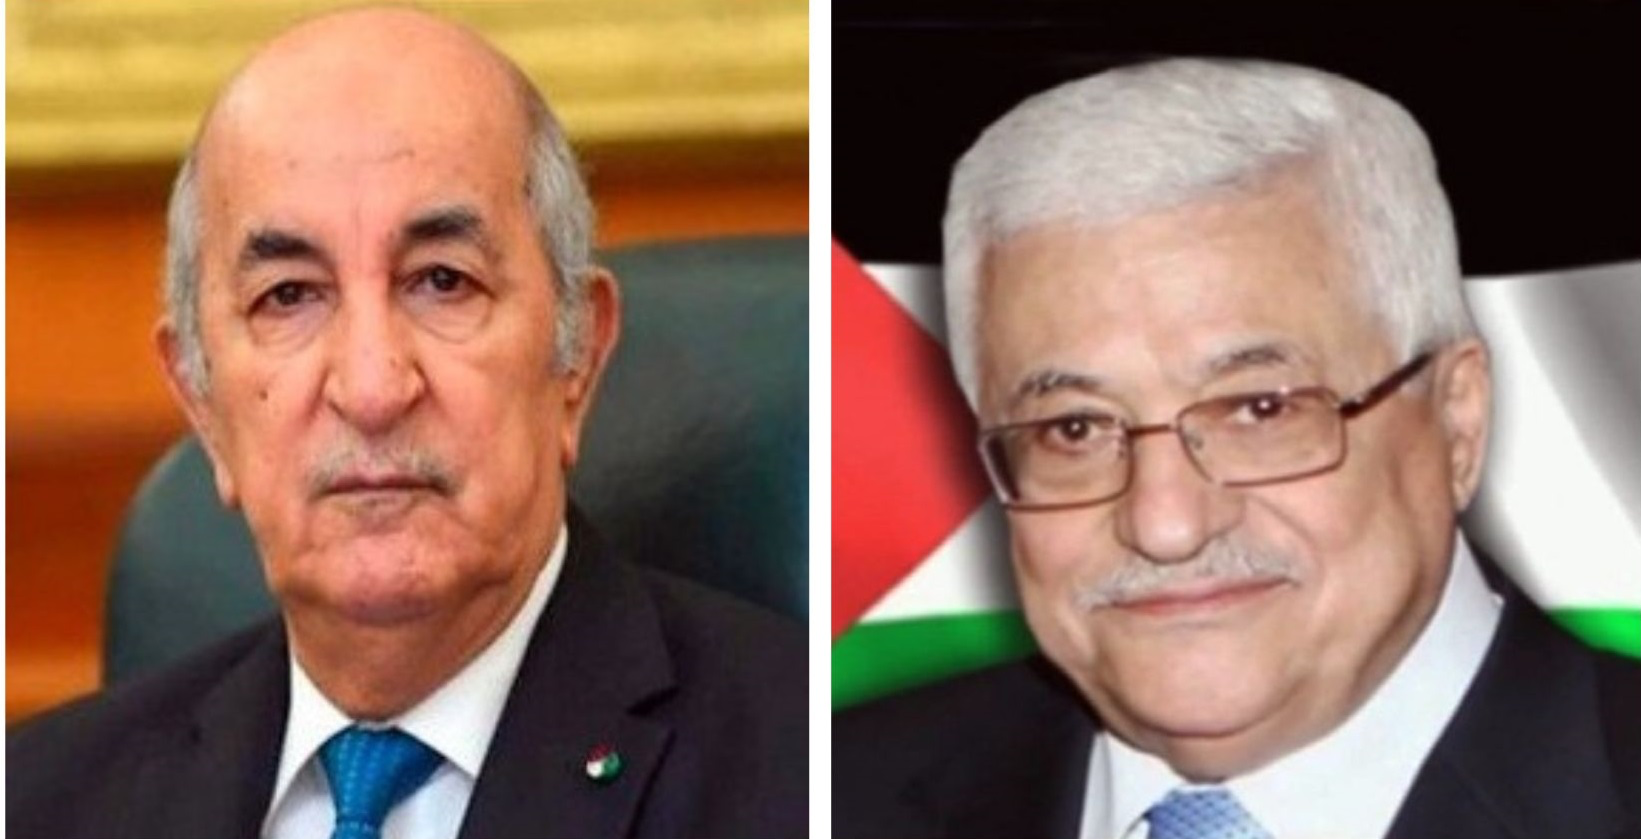 الرئيس عباس في اتصال مع أخيه الرئيس الجزائري: نشكركم على جهود الجزائر في لم الصف الفلسطيني ونتطلع لقمة عربية ناجحة